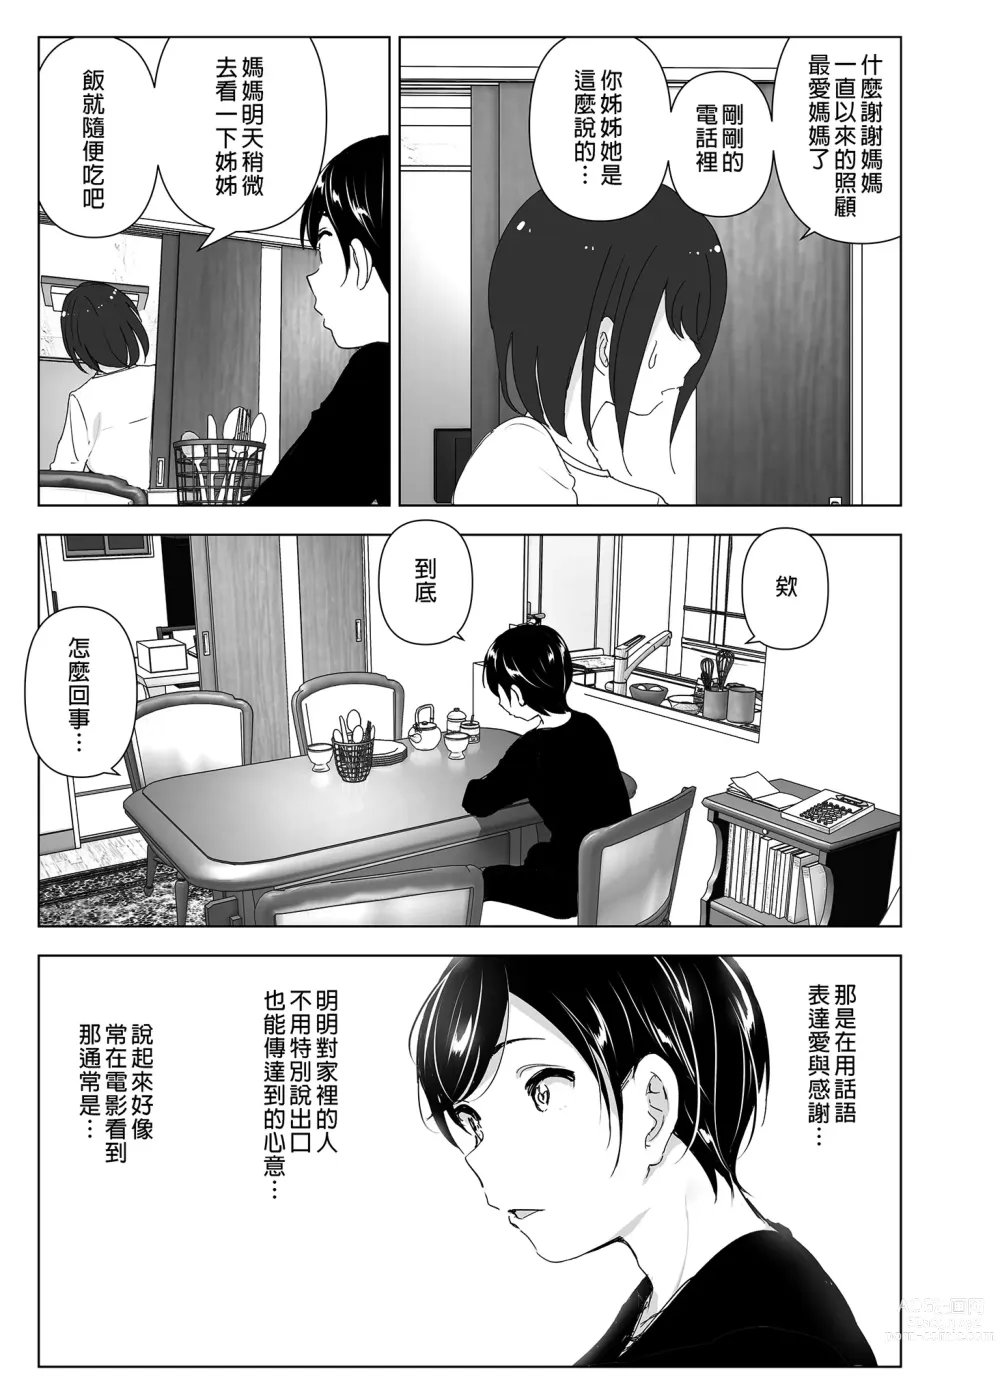 Page 7 of doujinshi 從前很快樂 (decensored)